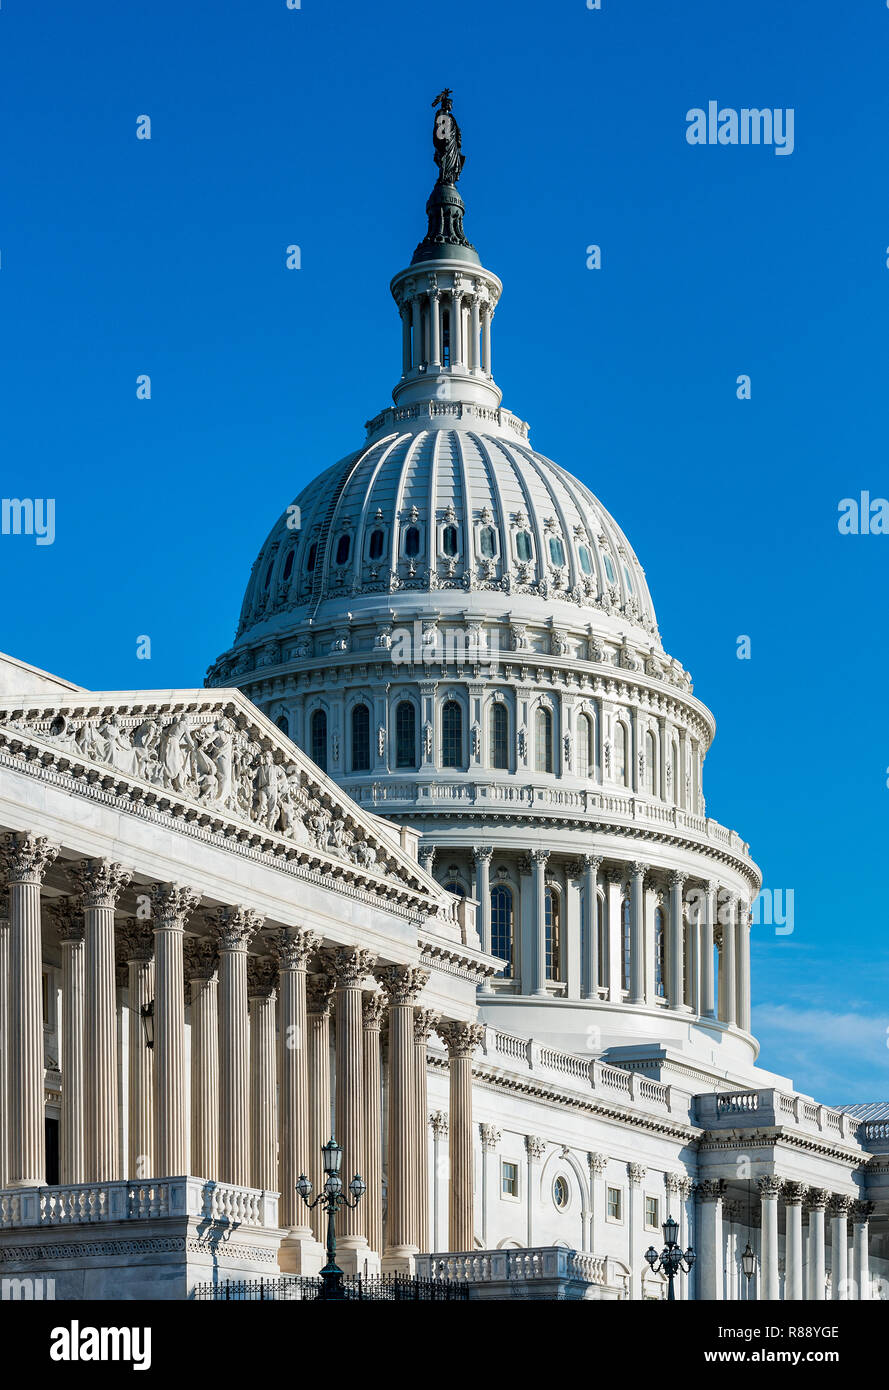 El edificio del Capitolio de los Estados Unidos, Washington DC, Estados Unidos. Foto de stock